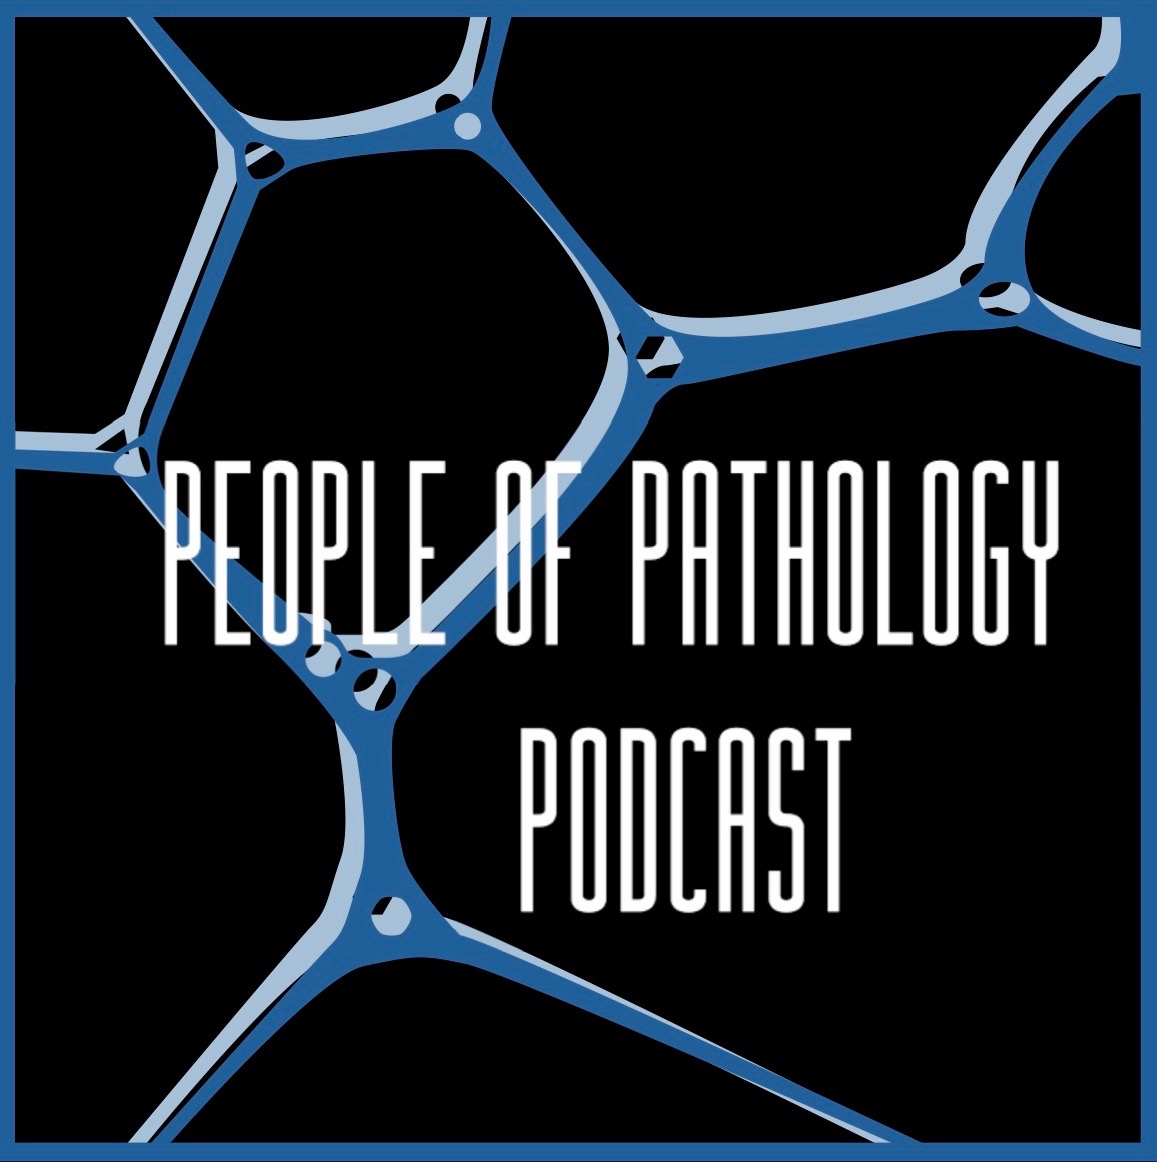 Dr Melanie Bois – Cardiovascular Pathologist and Podcast Host